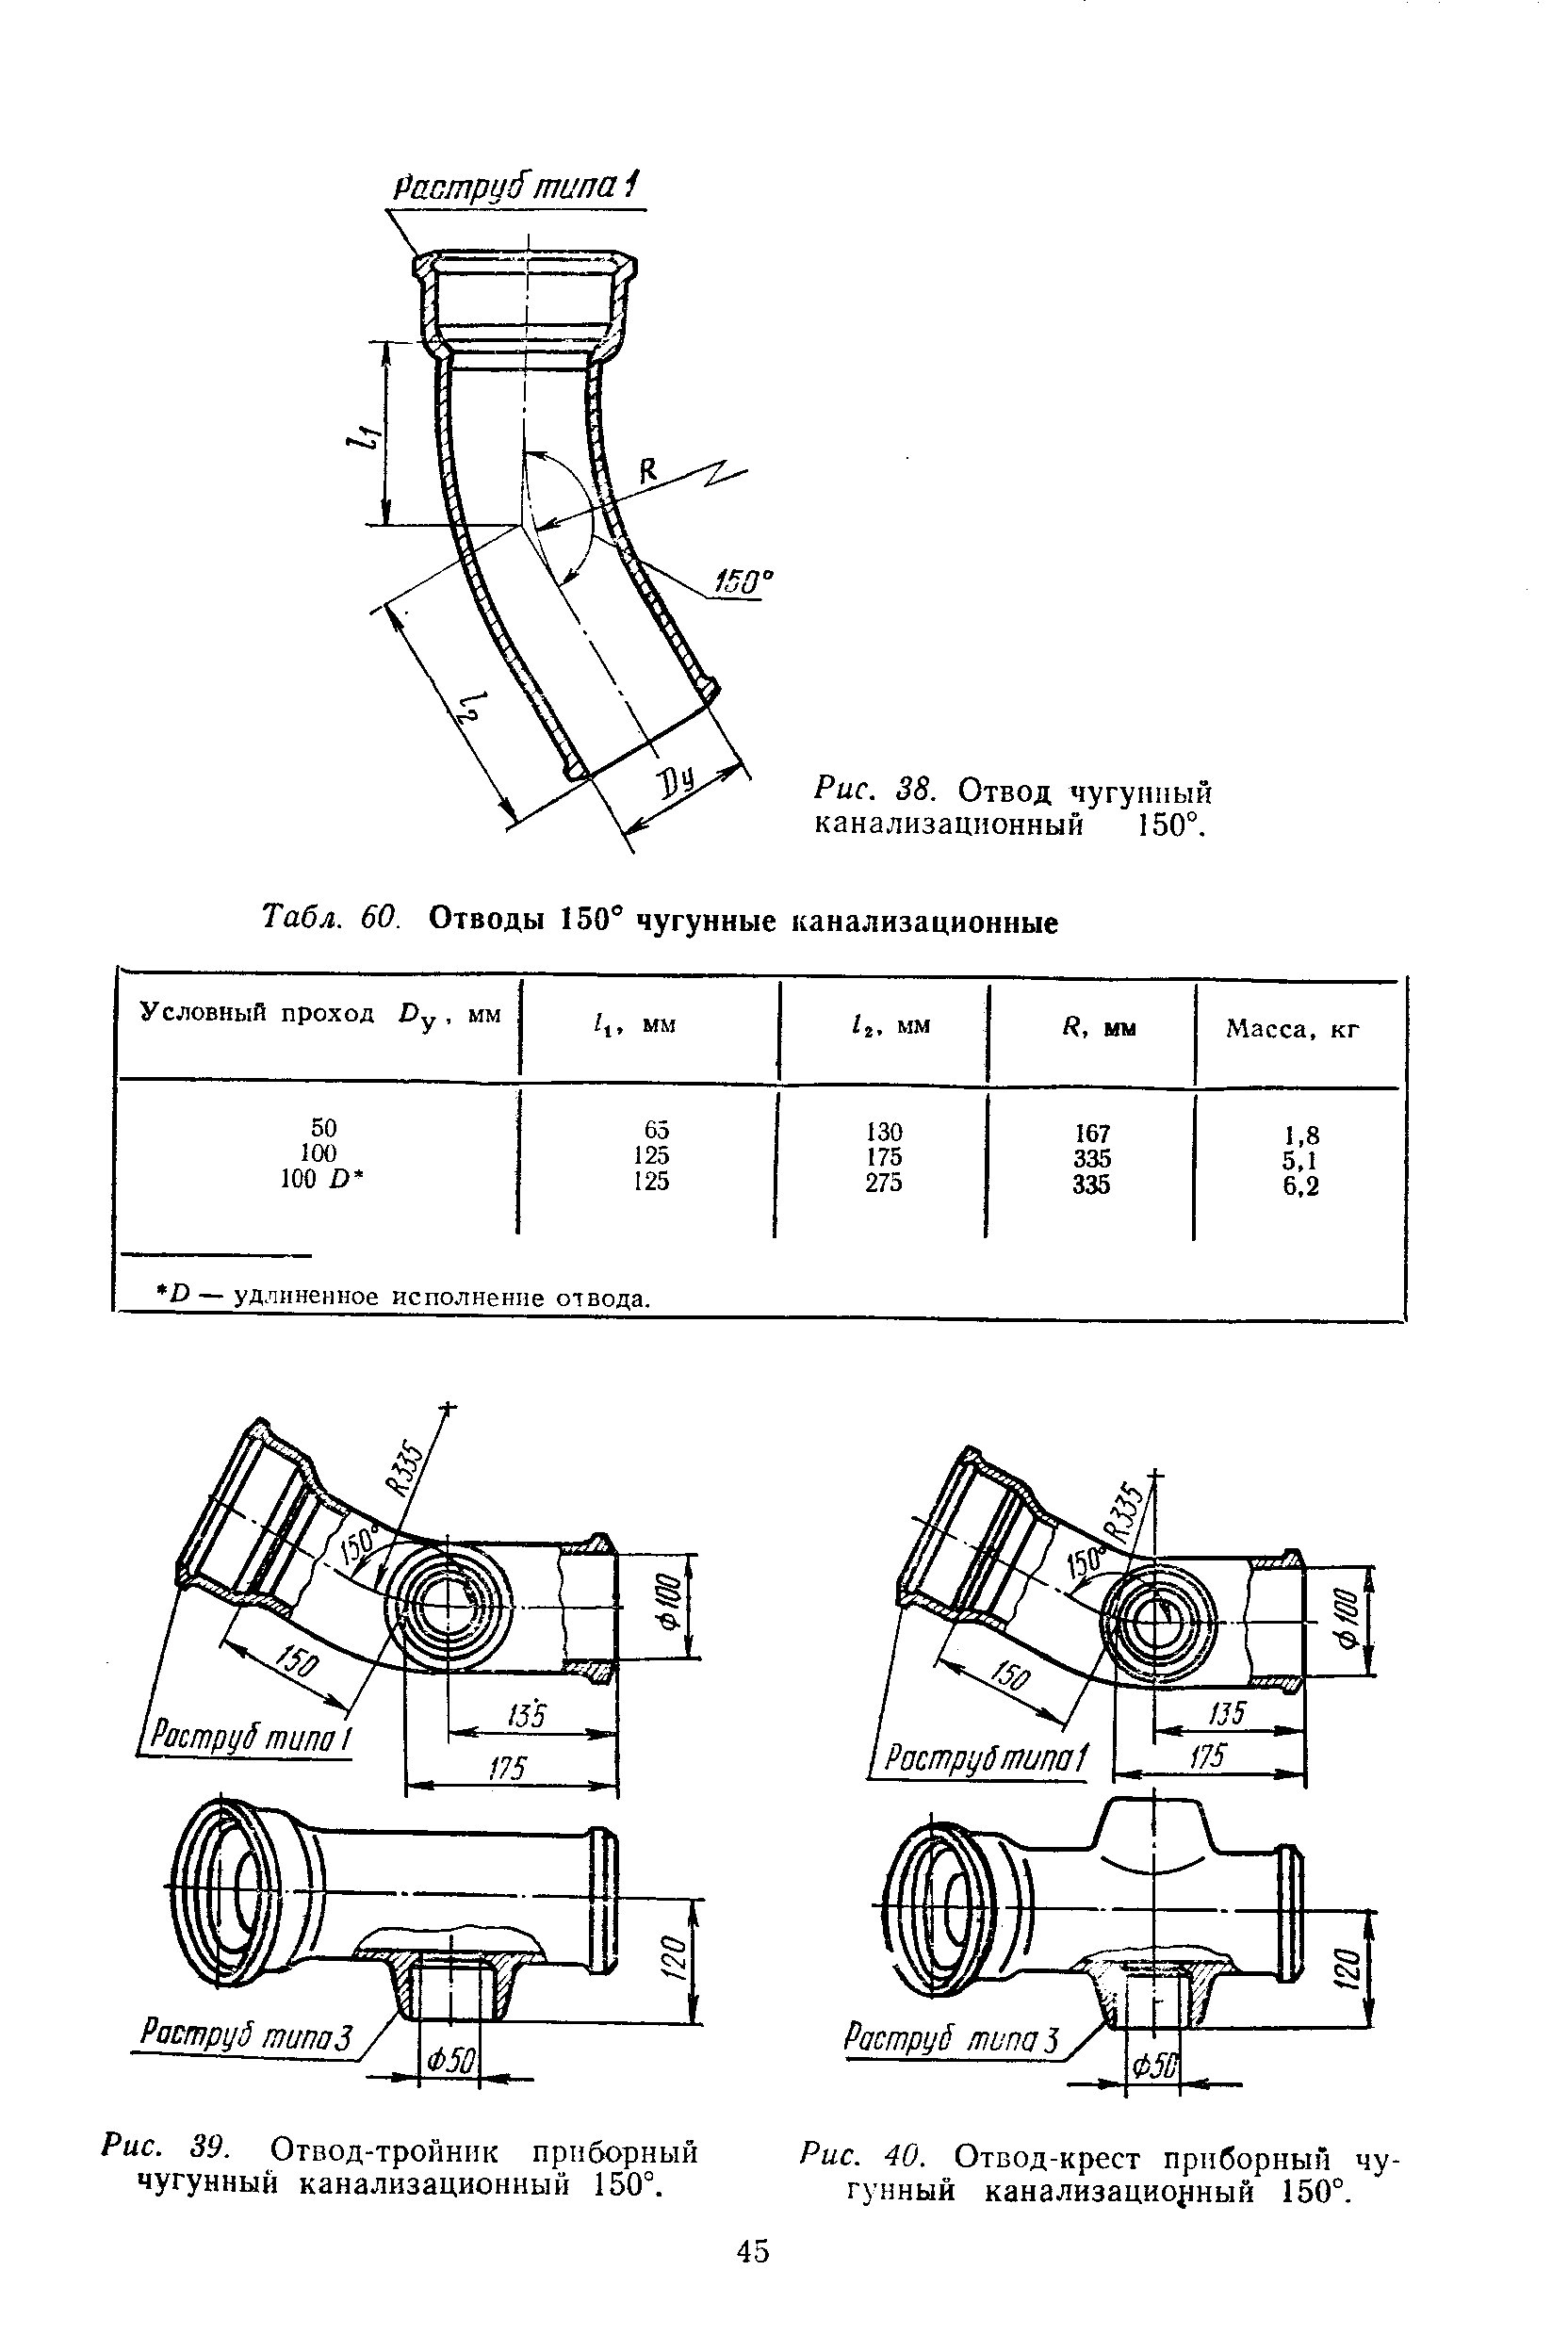 Рис. 40. Отвод-крест приборный чугунный канализационный 150°.
